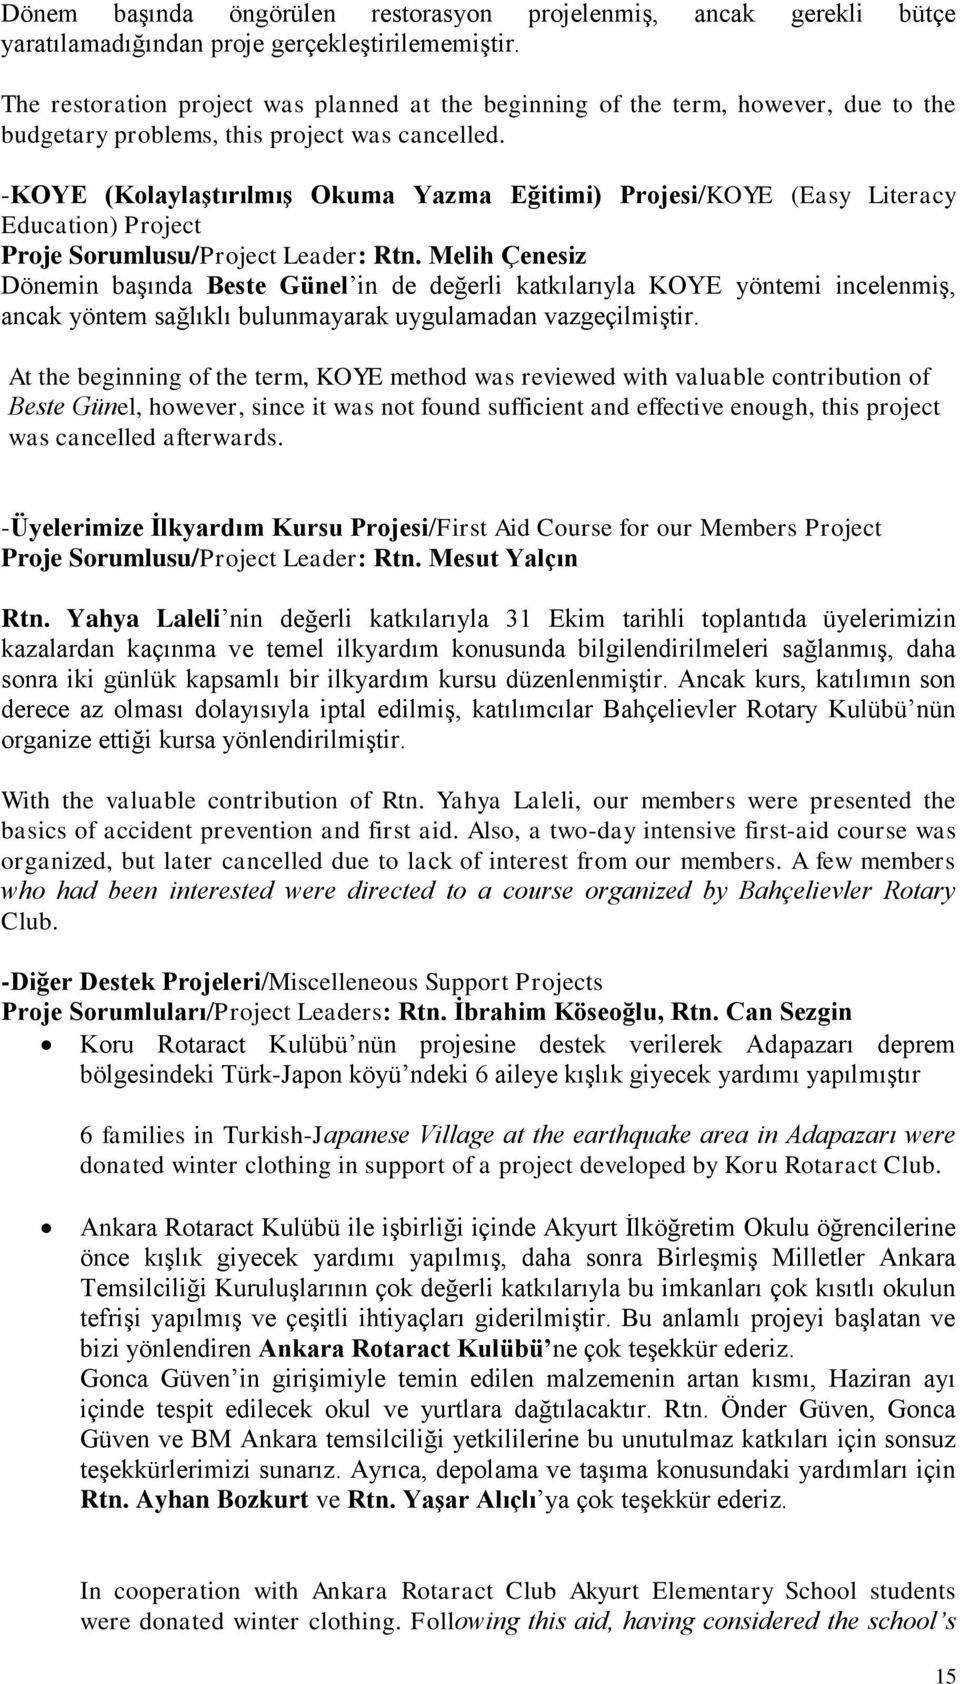 -KOYE (Kolaylaştırılmış Okuma Yazma Eğitimi) Projesi/KOYE (Easy Literacy Education) Project Proje Sorumlusu/Project Leader: Rtn.